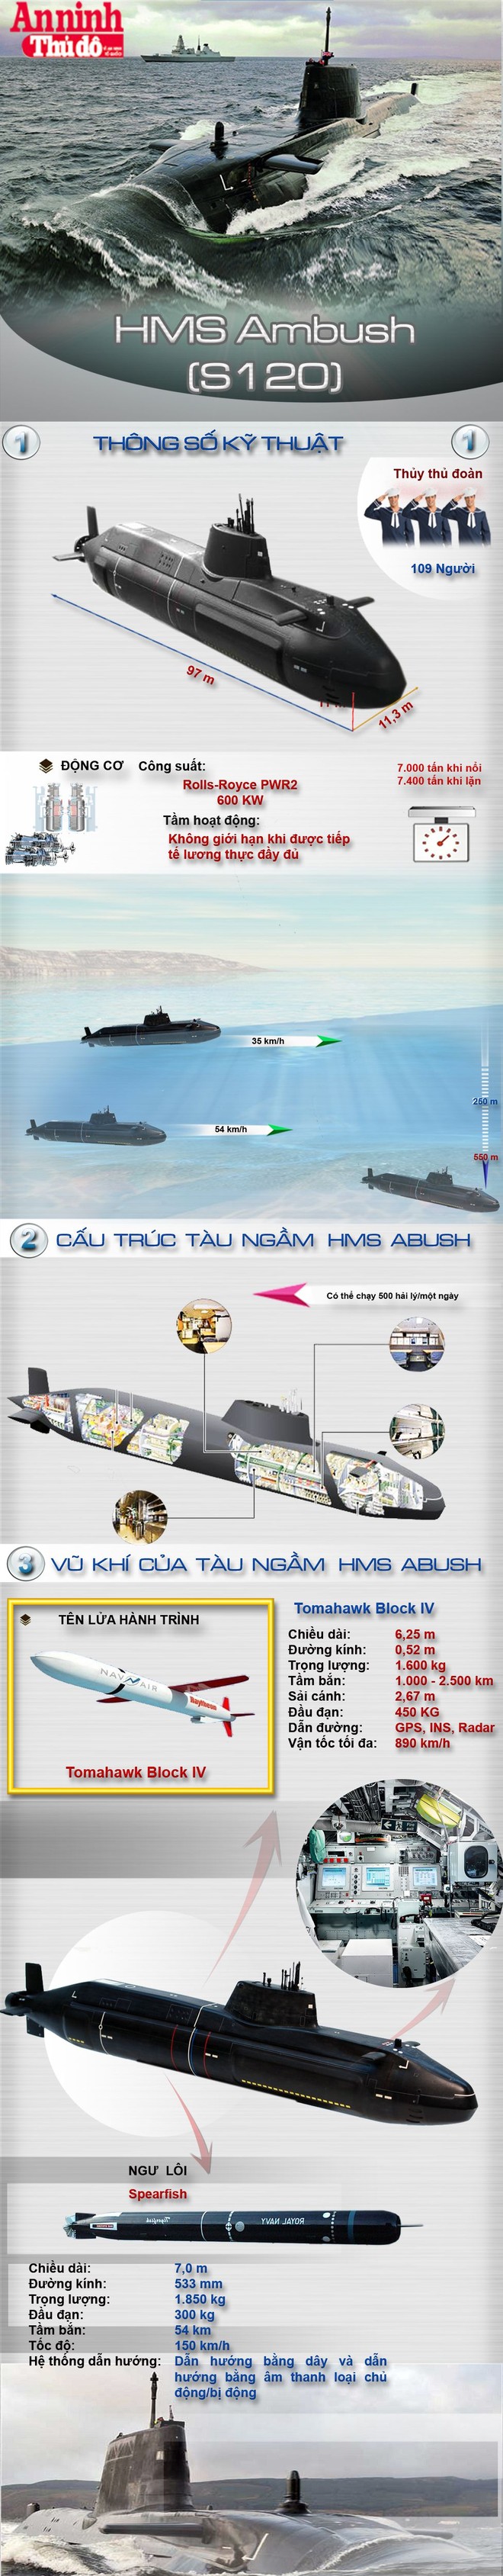 [Infographic] Sức mạnh khủng khiếp của siêu tàu ngầm hiện đại Anh Quốc ảnh 1